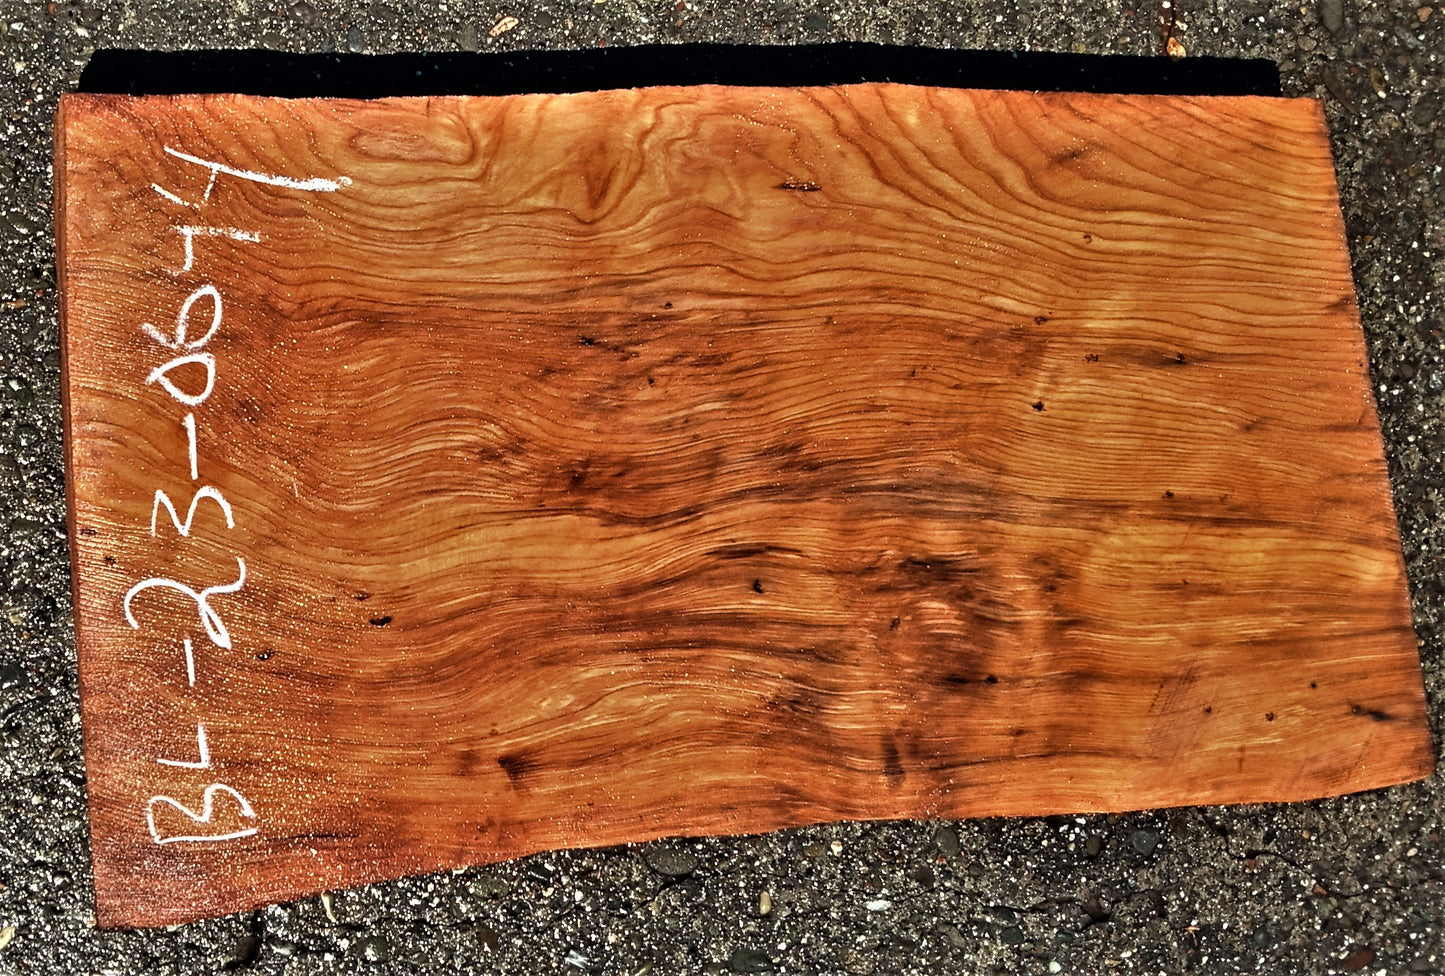 redwood | bowl turning | wood turning | DIY crafts | guitar | bl23-0644